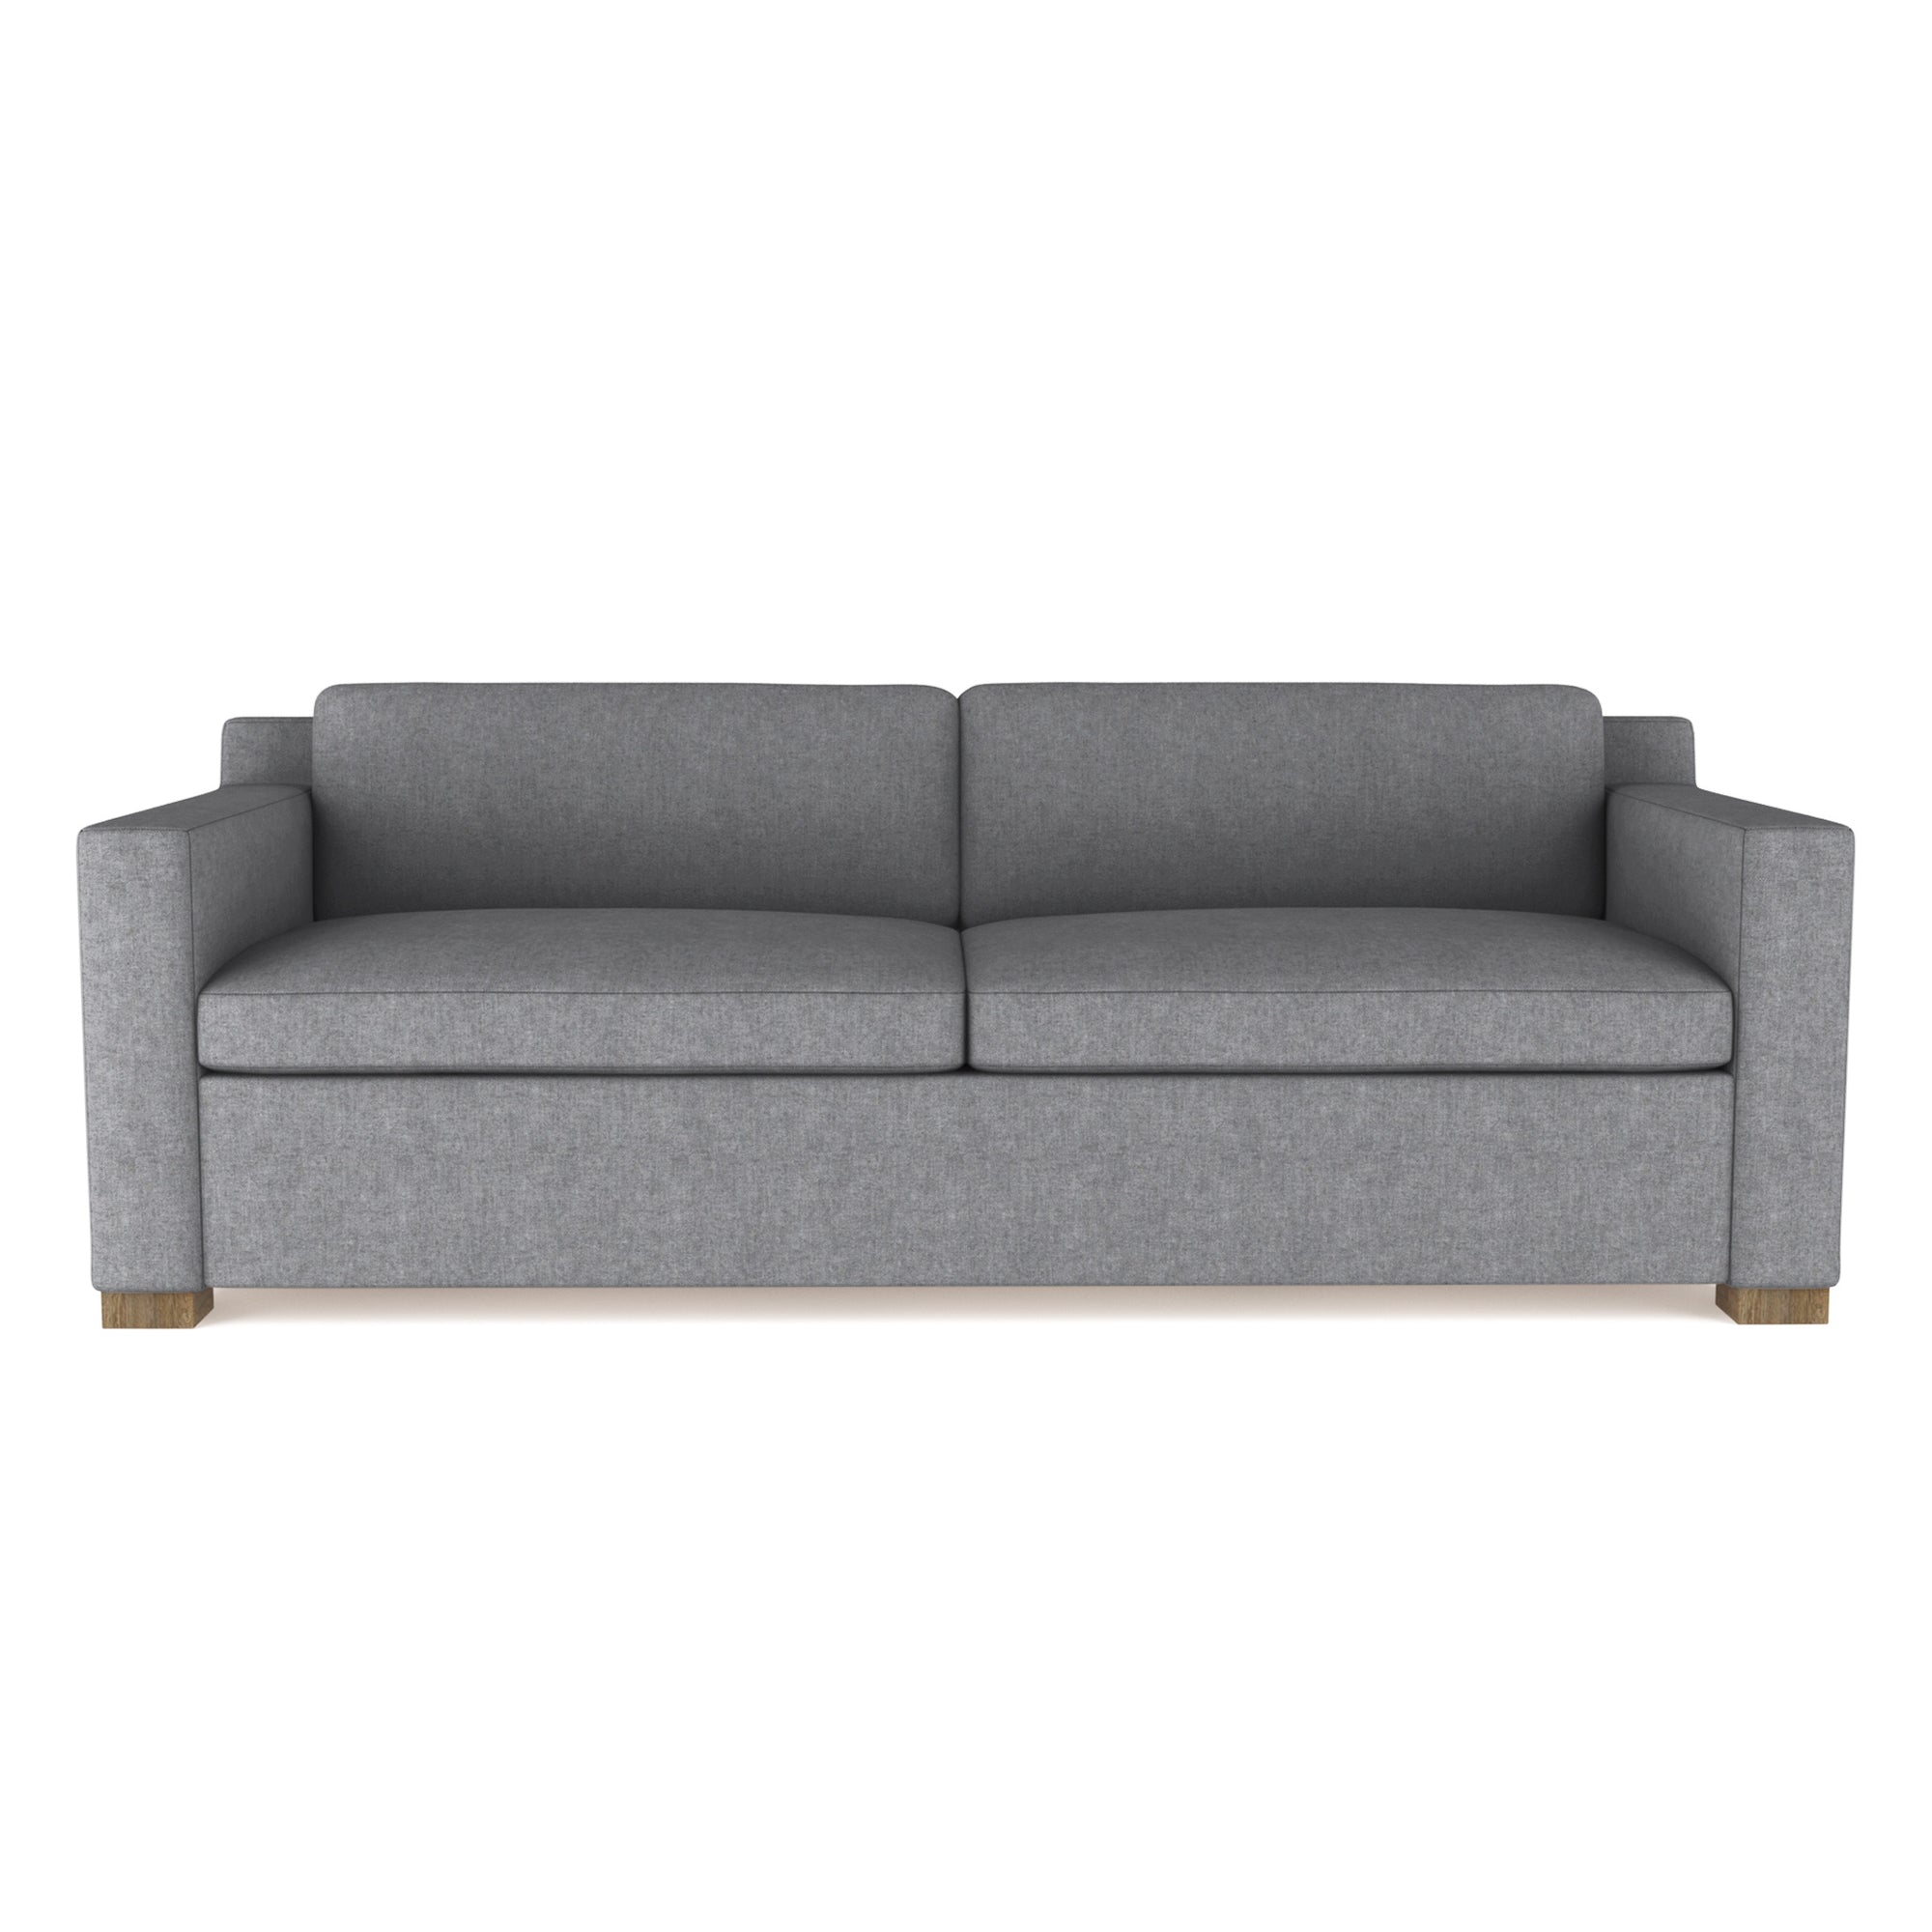 Mercer Sofa - Pumice Plush Velvet